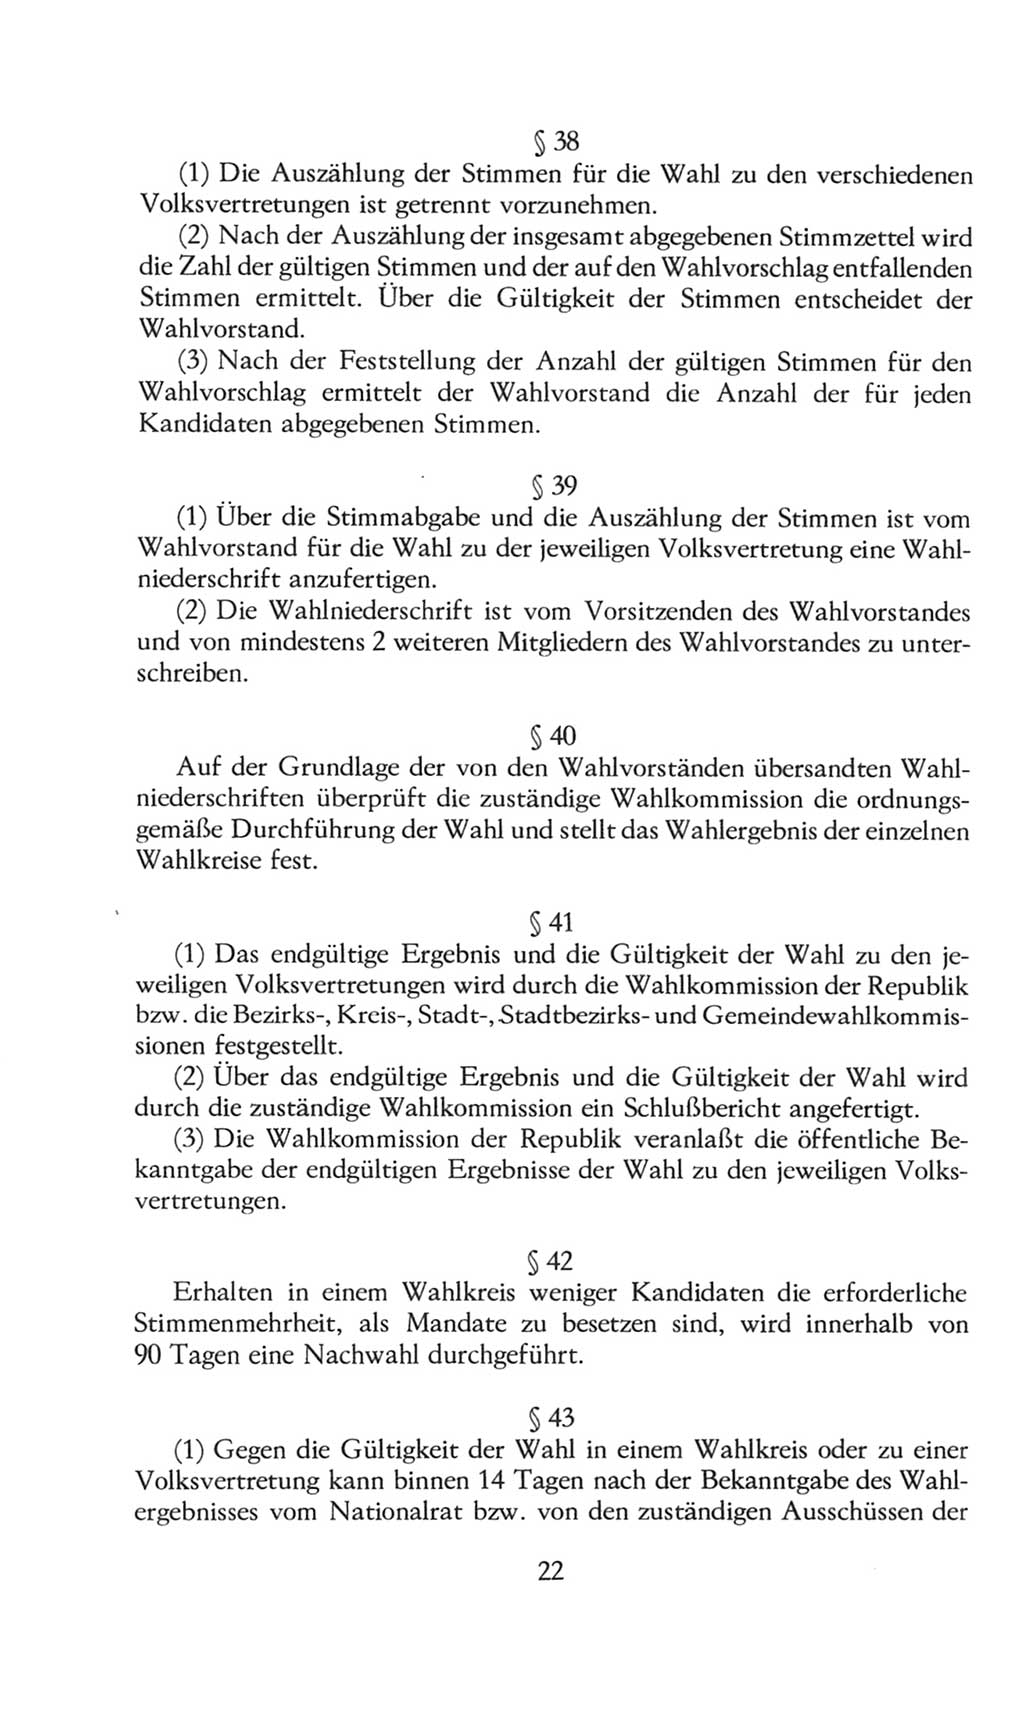 Volkskammer (VK) der Deutschen Demokratischen Republik (DDR), 8. Wahlperiode 1981-1986, Seite 22 (VK. DDR 8. WP. 1981-1986, S. 22)